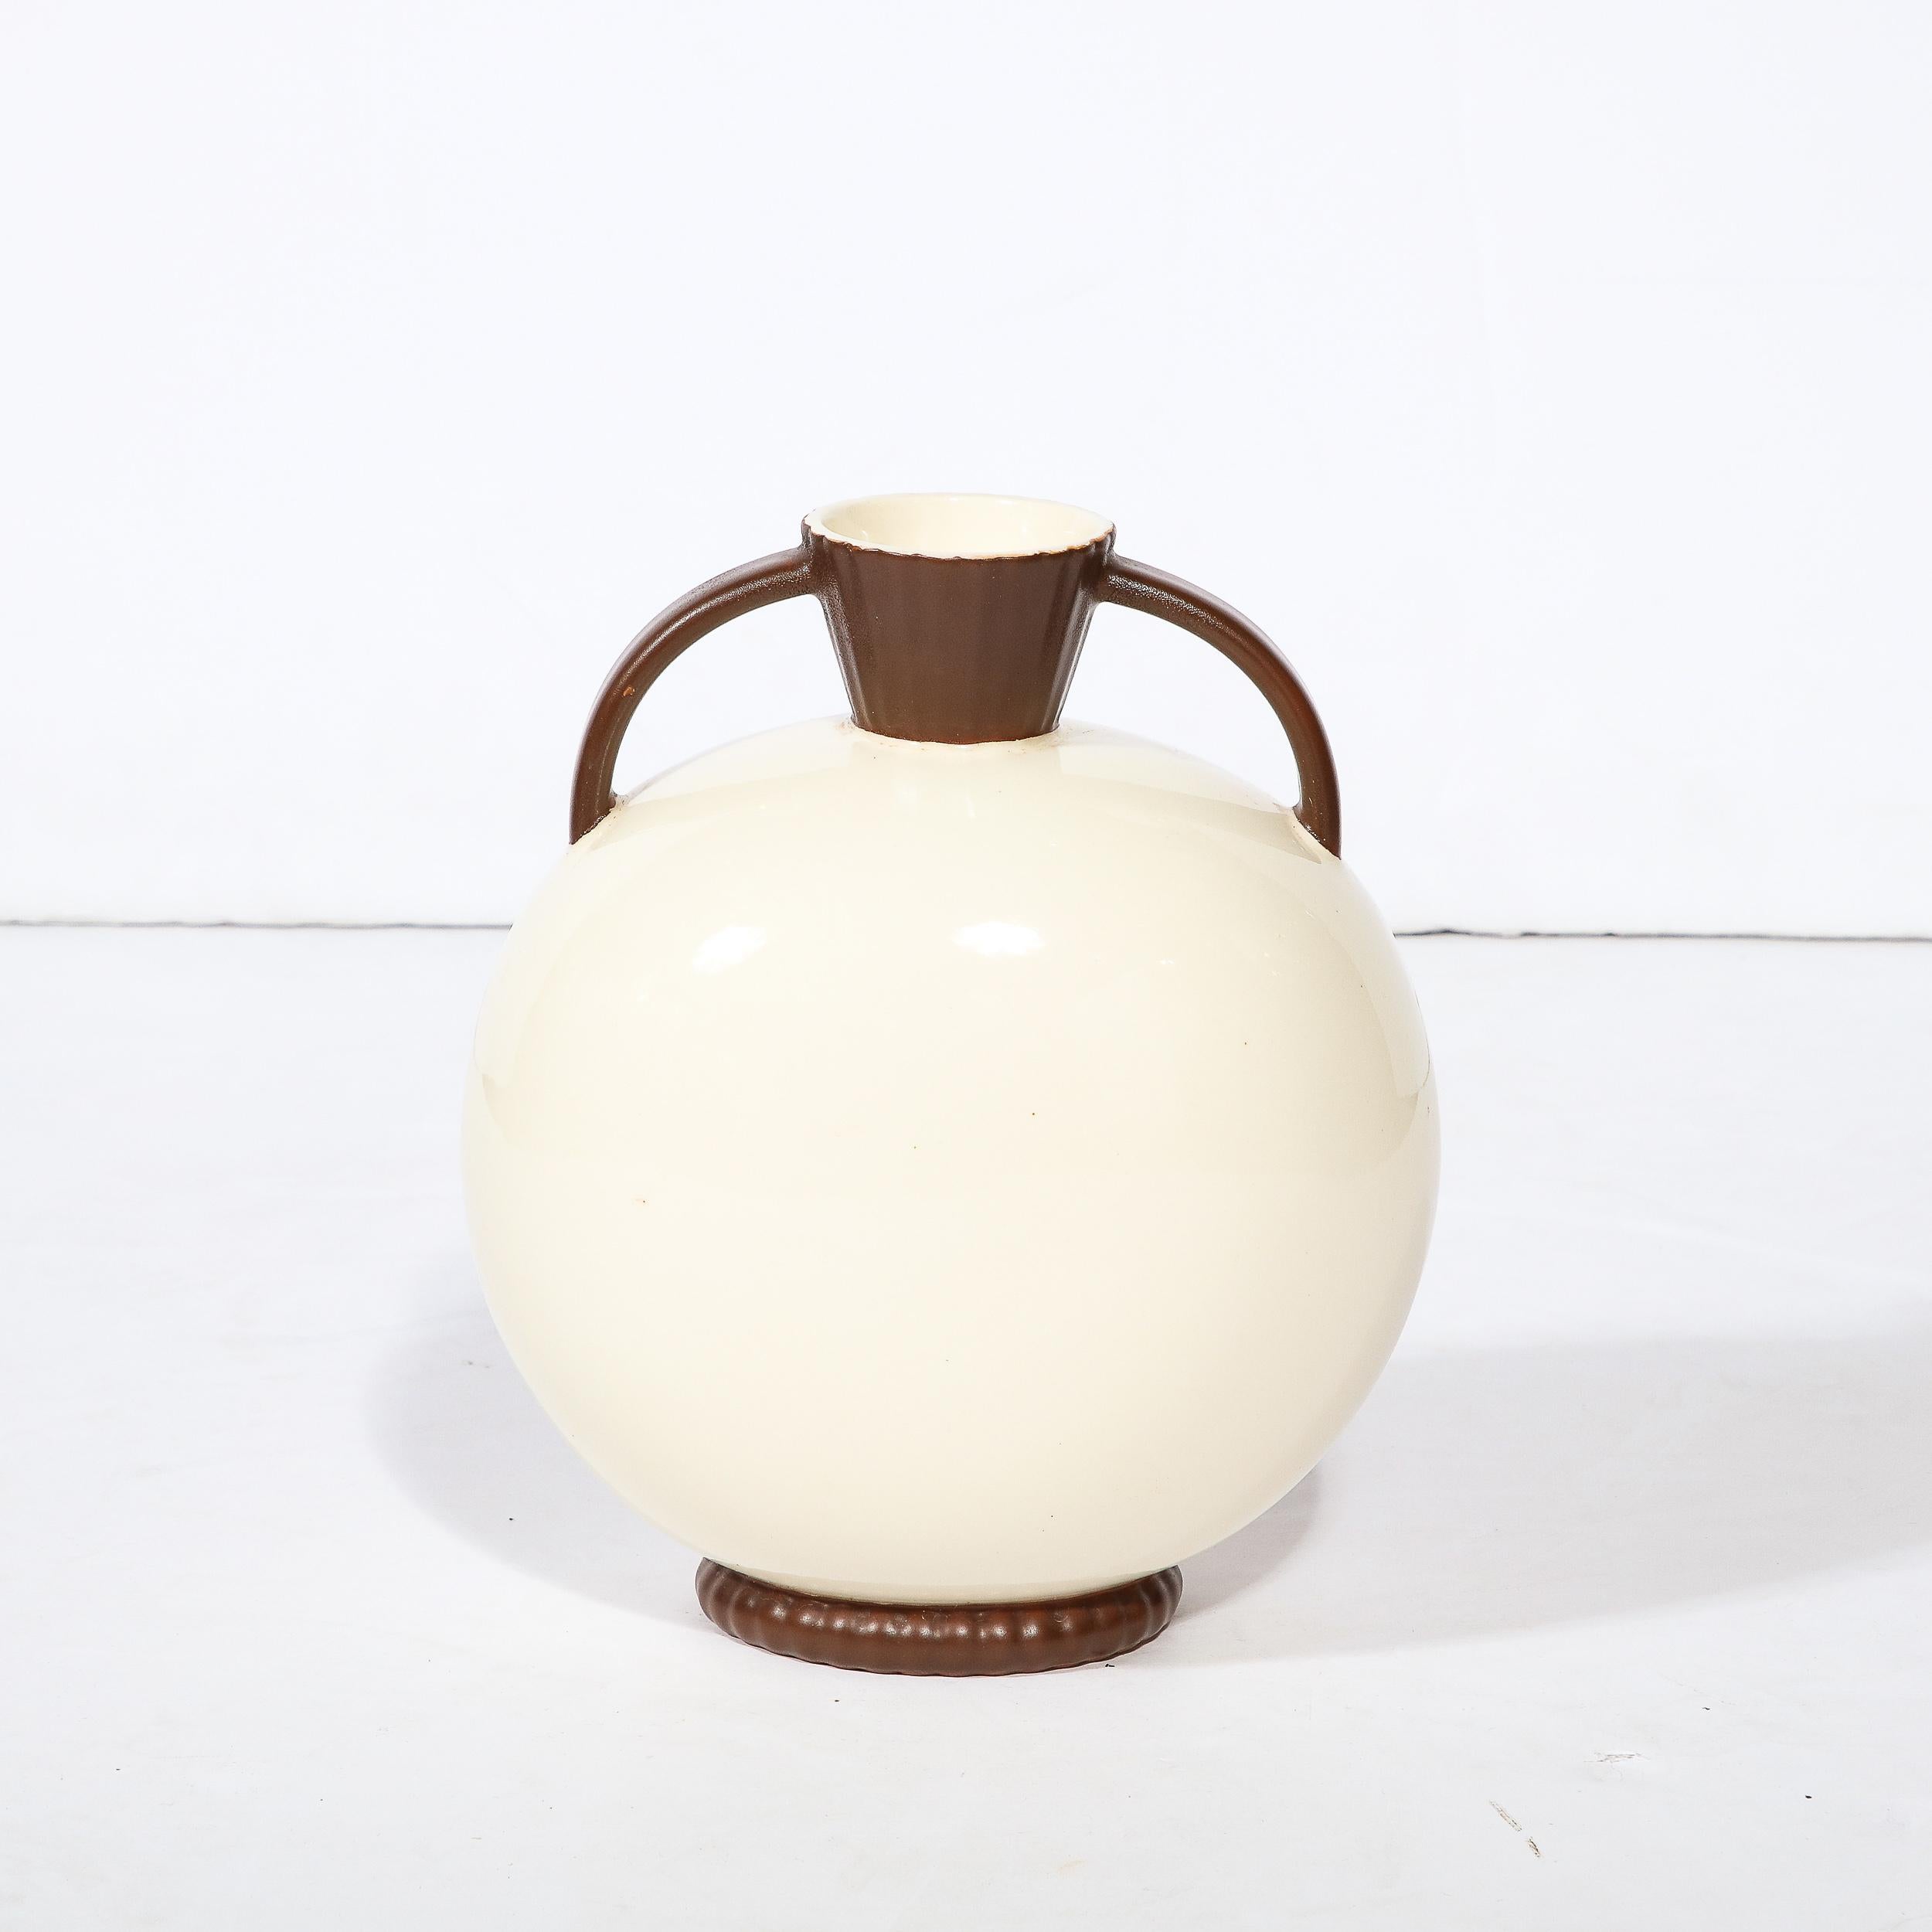 Diese elegante Art-Déco-Keramikvase wurde um 1930 vom angesehenen Atelier Royal Crown in der Tschechoslowakei hergestellt. Das Stück, das eine moderne Interpretation der klassischen griechischen Amphora-Vase darstellt, hat einen runden,